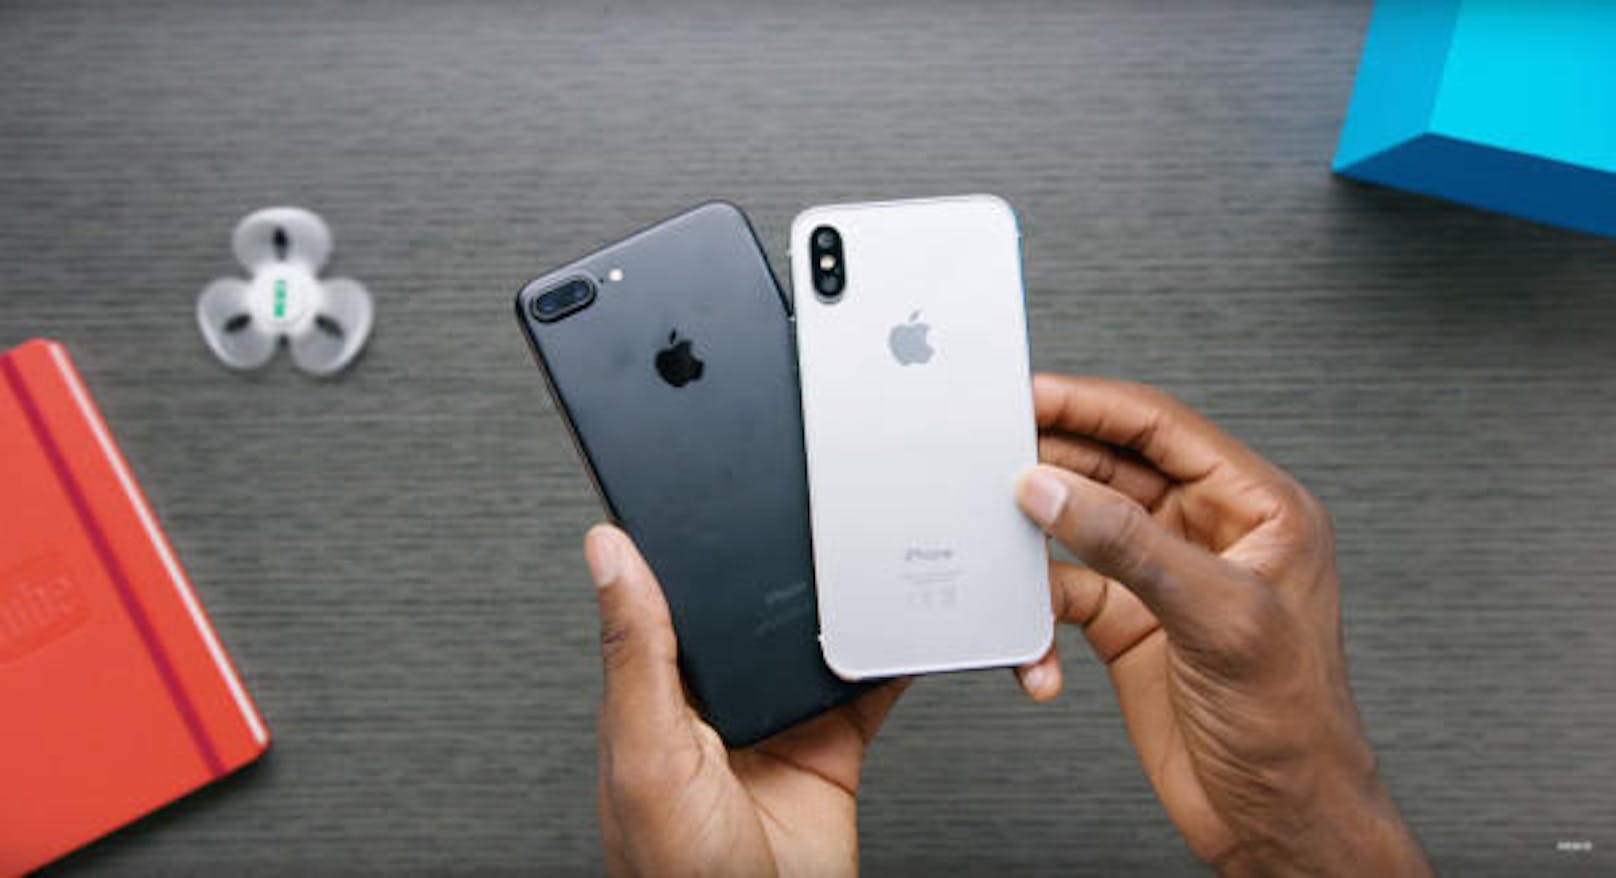 Größenvergleich: Das kommende iPhone soll zwar einen größeren Bildschirm als das iPhone 7 Plus erhalten, aber insgesamt kleiner sein.